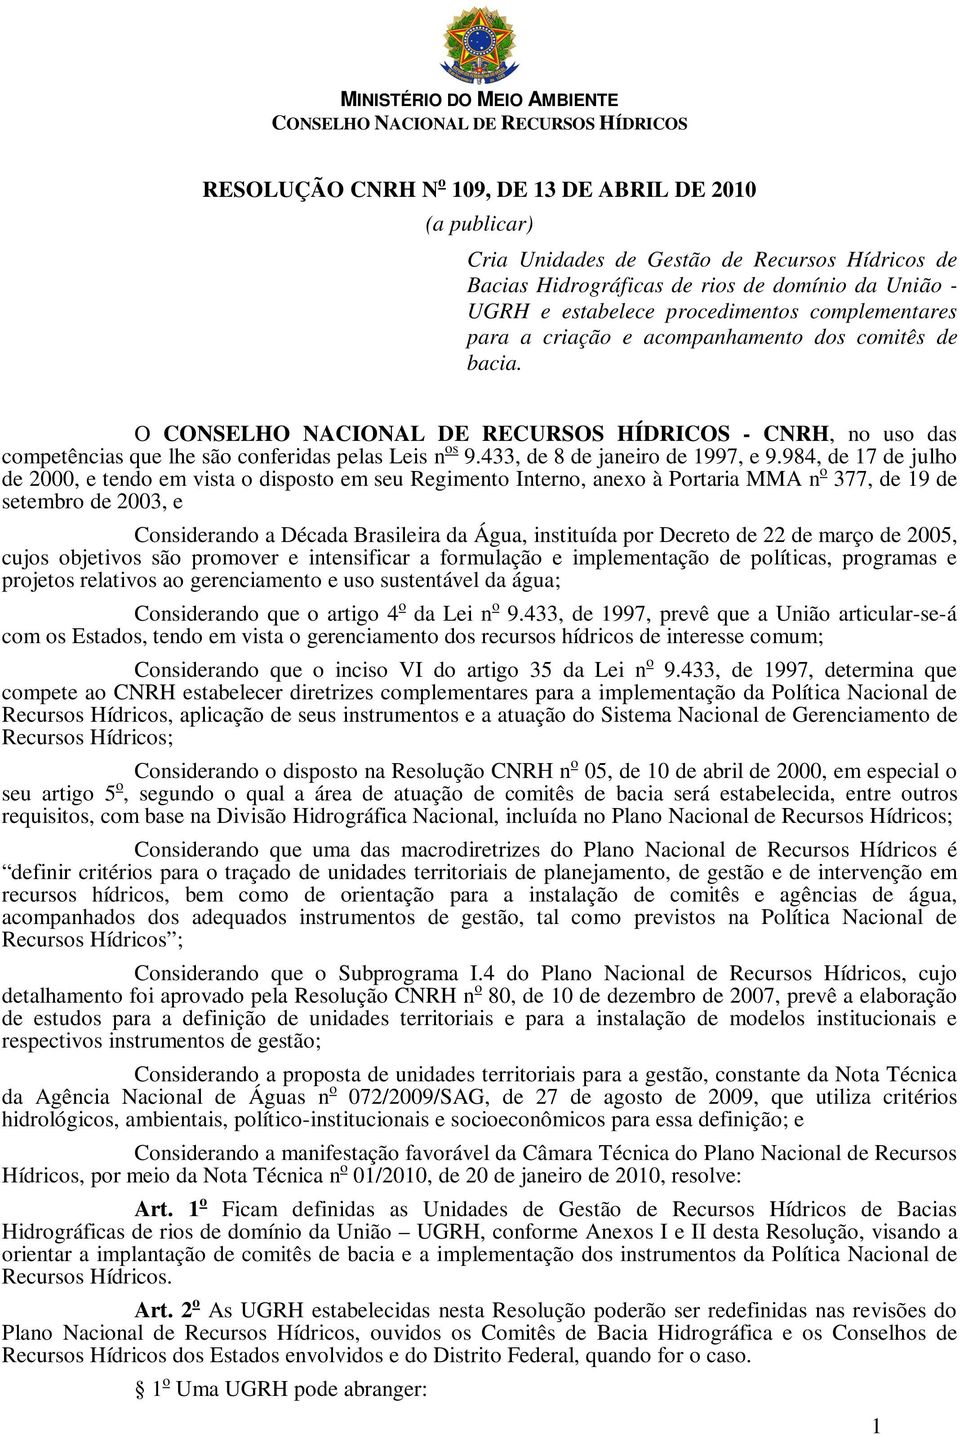 O CONSELHO NACIONAL DE RECURSOS HÍDRICOS - CNRH, no uso das competências que lhe são conferidas pelas Leis n os 9.433, de 8 de janeiro de 1997, e 9.